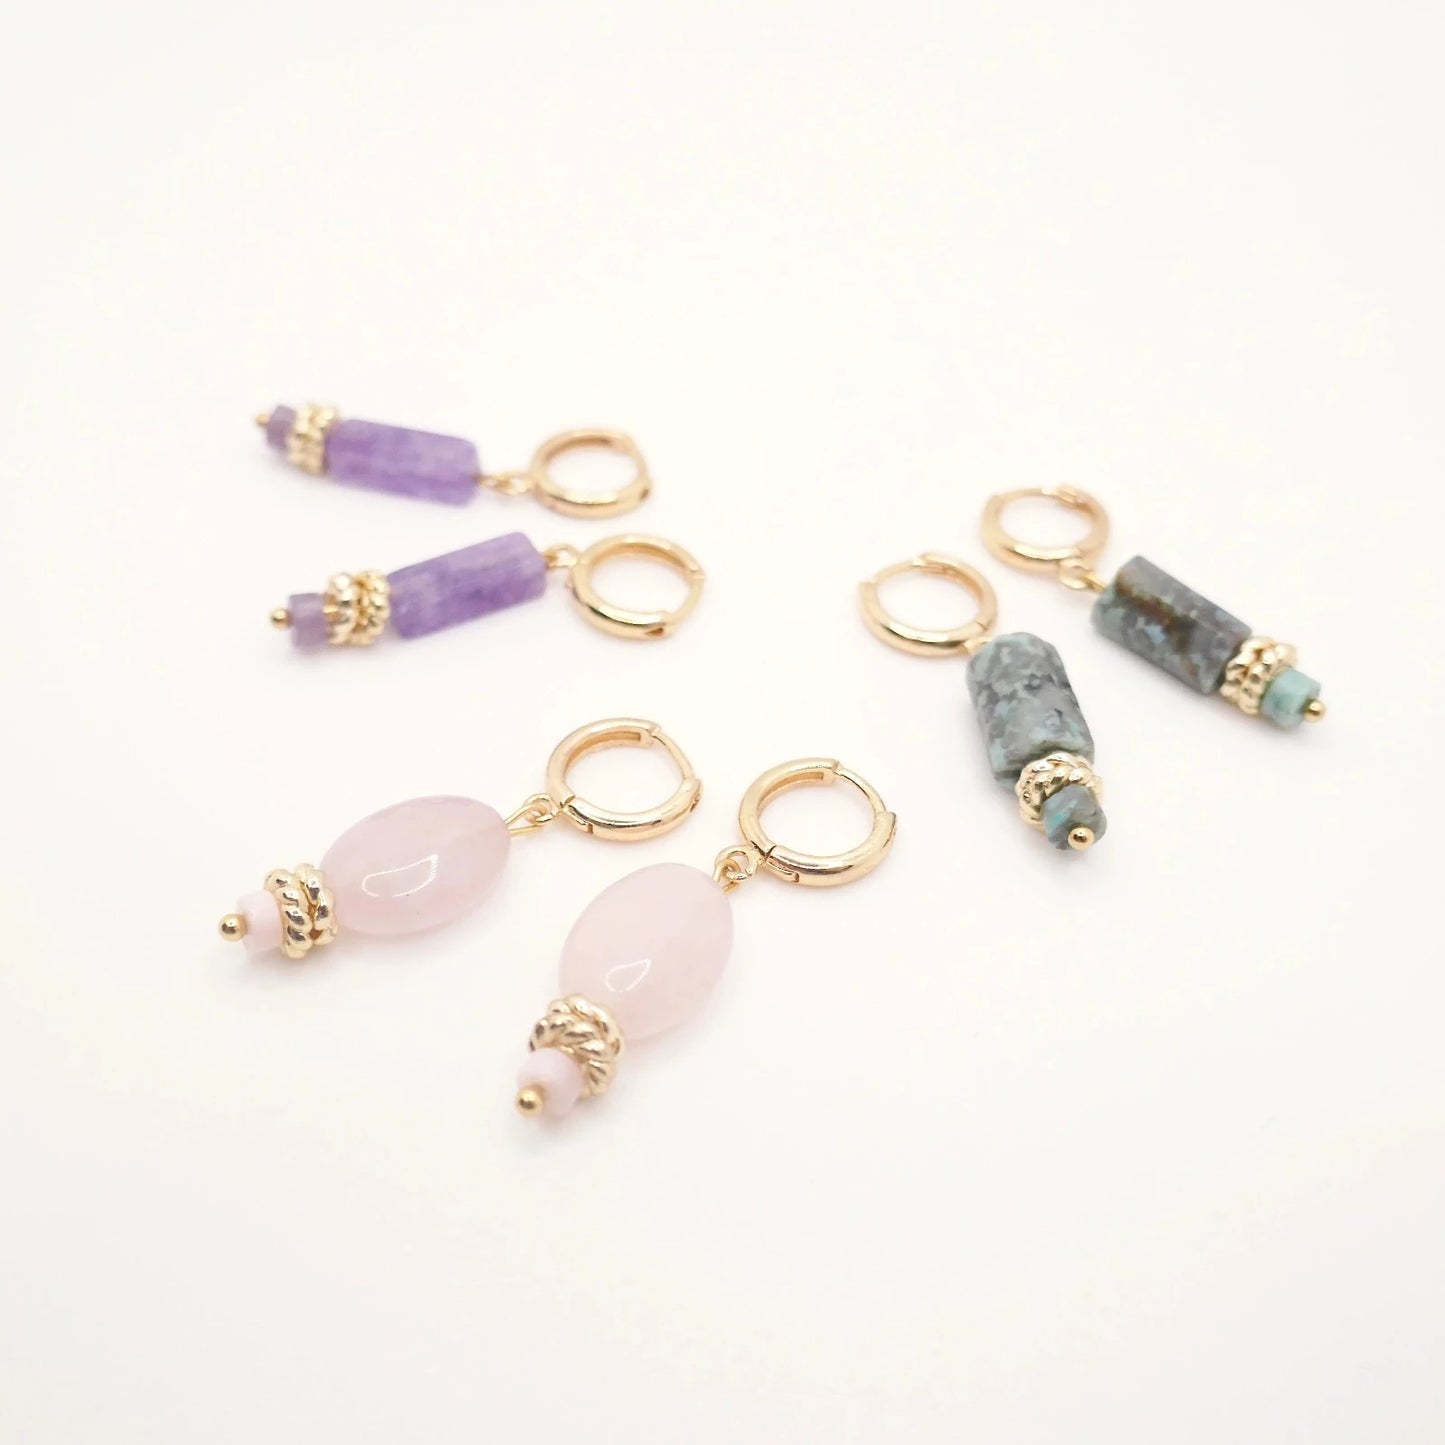 Boucles d'oreilles dorées pour femme et en pierres naturelles violette, rose, or et vert